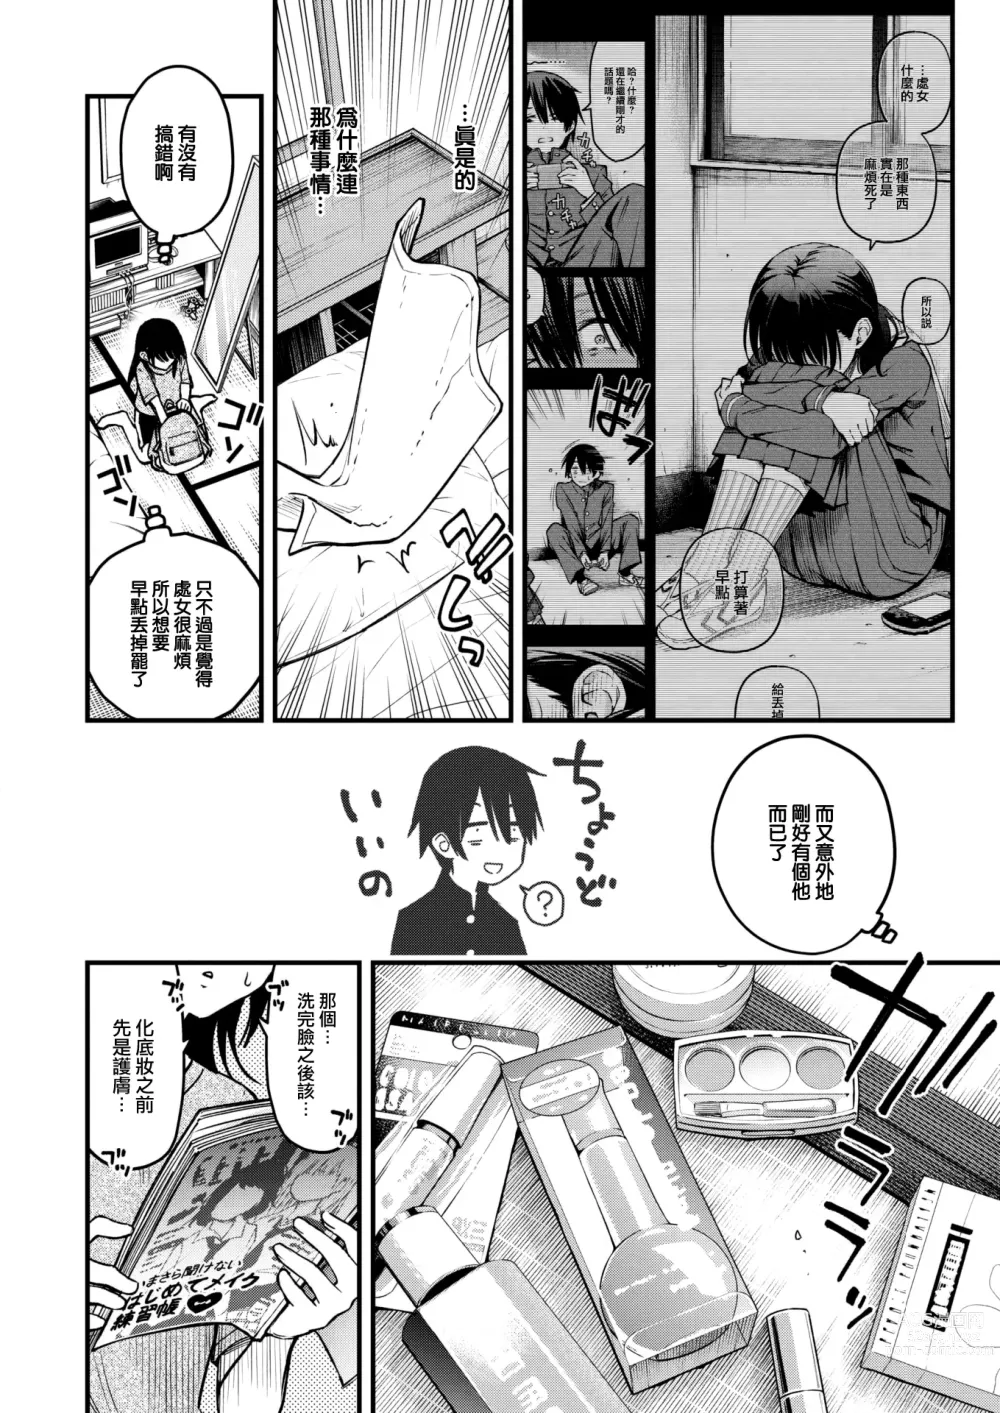 Page 5 of manga InCha Doushi no Sex ga Ichiban Eroiyo ne #2 -Amano Yuka no Baai-